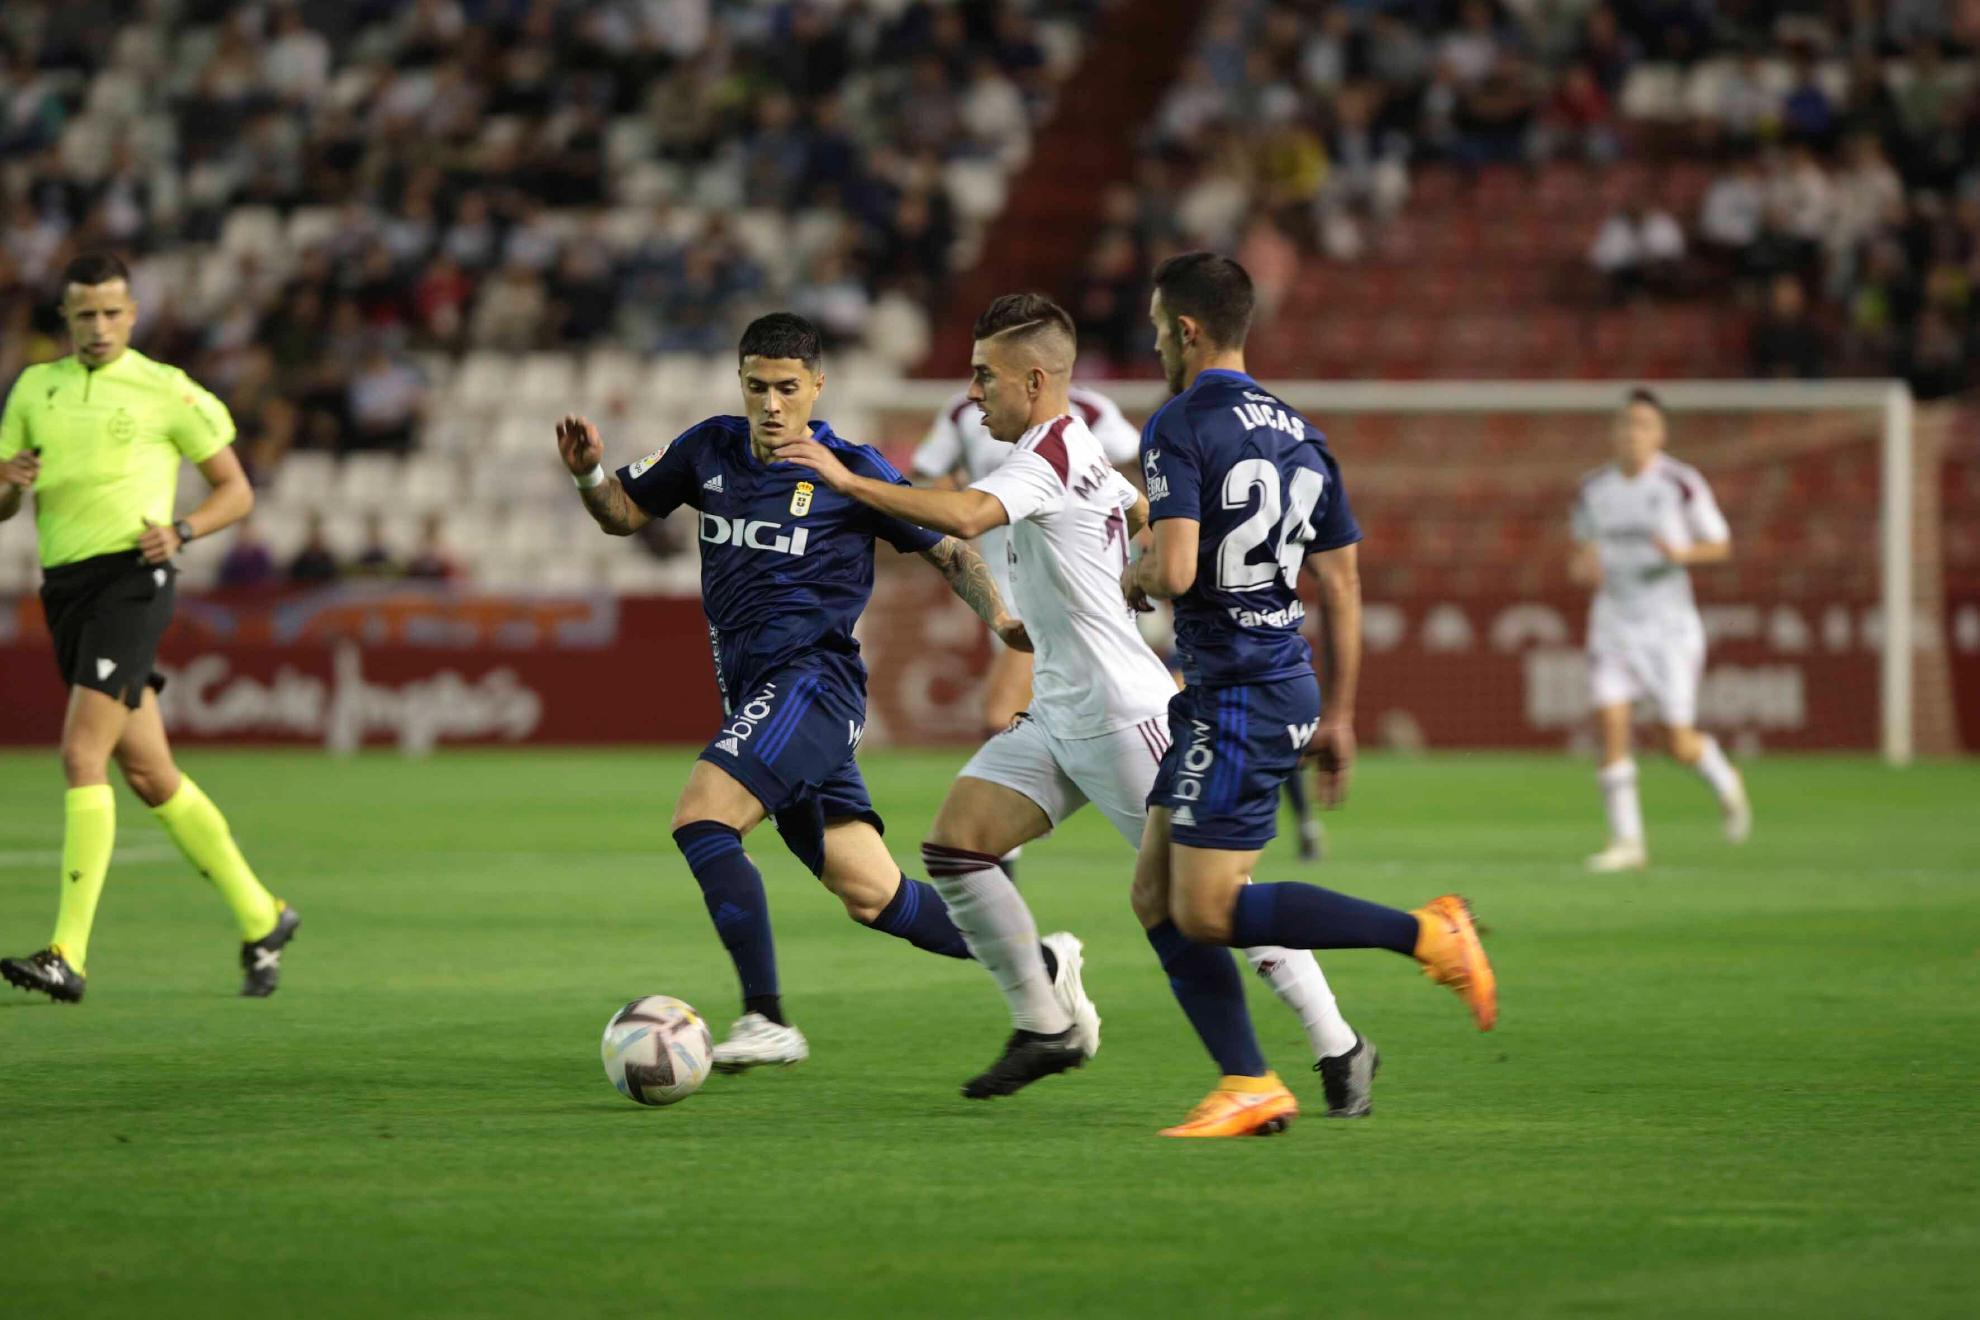 Manuel Fuster conduce el balón entre dos jugadores del Oviedo / JOSE SANCHEZ